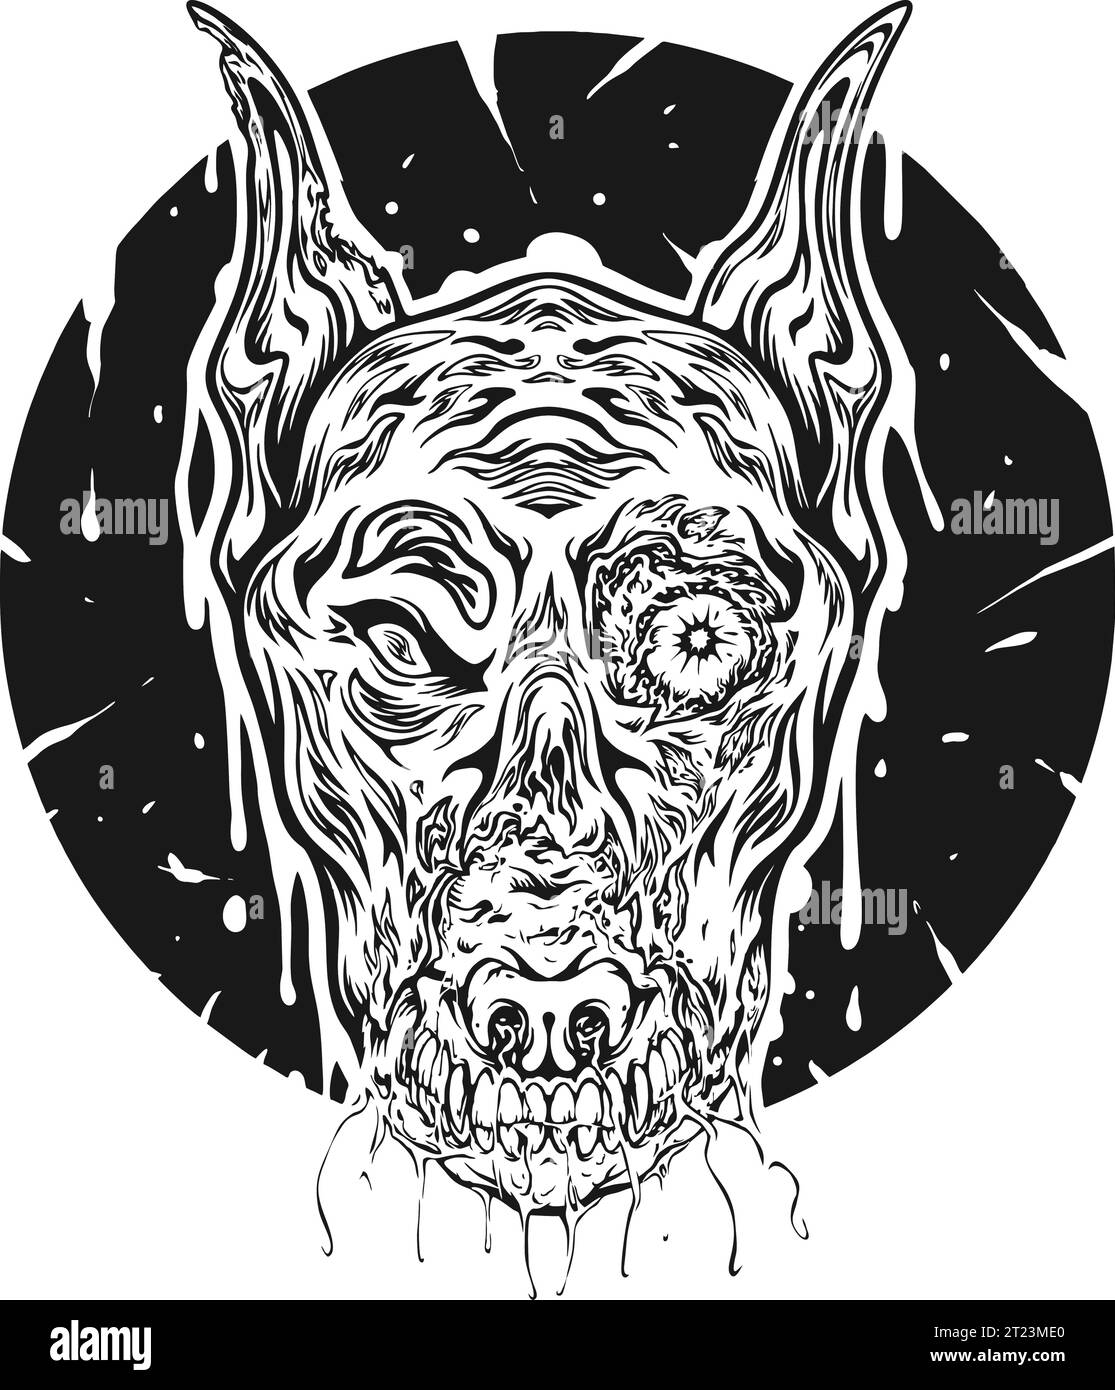 Spooky zombie canin tête abstraite illustrations vectorielles monochromes pour votre logo de travail, t-shirt de marchandises, autocollants et dessins d'étiquettes, affiche, greeti Illustration de Vecteur